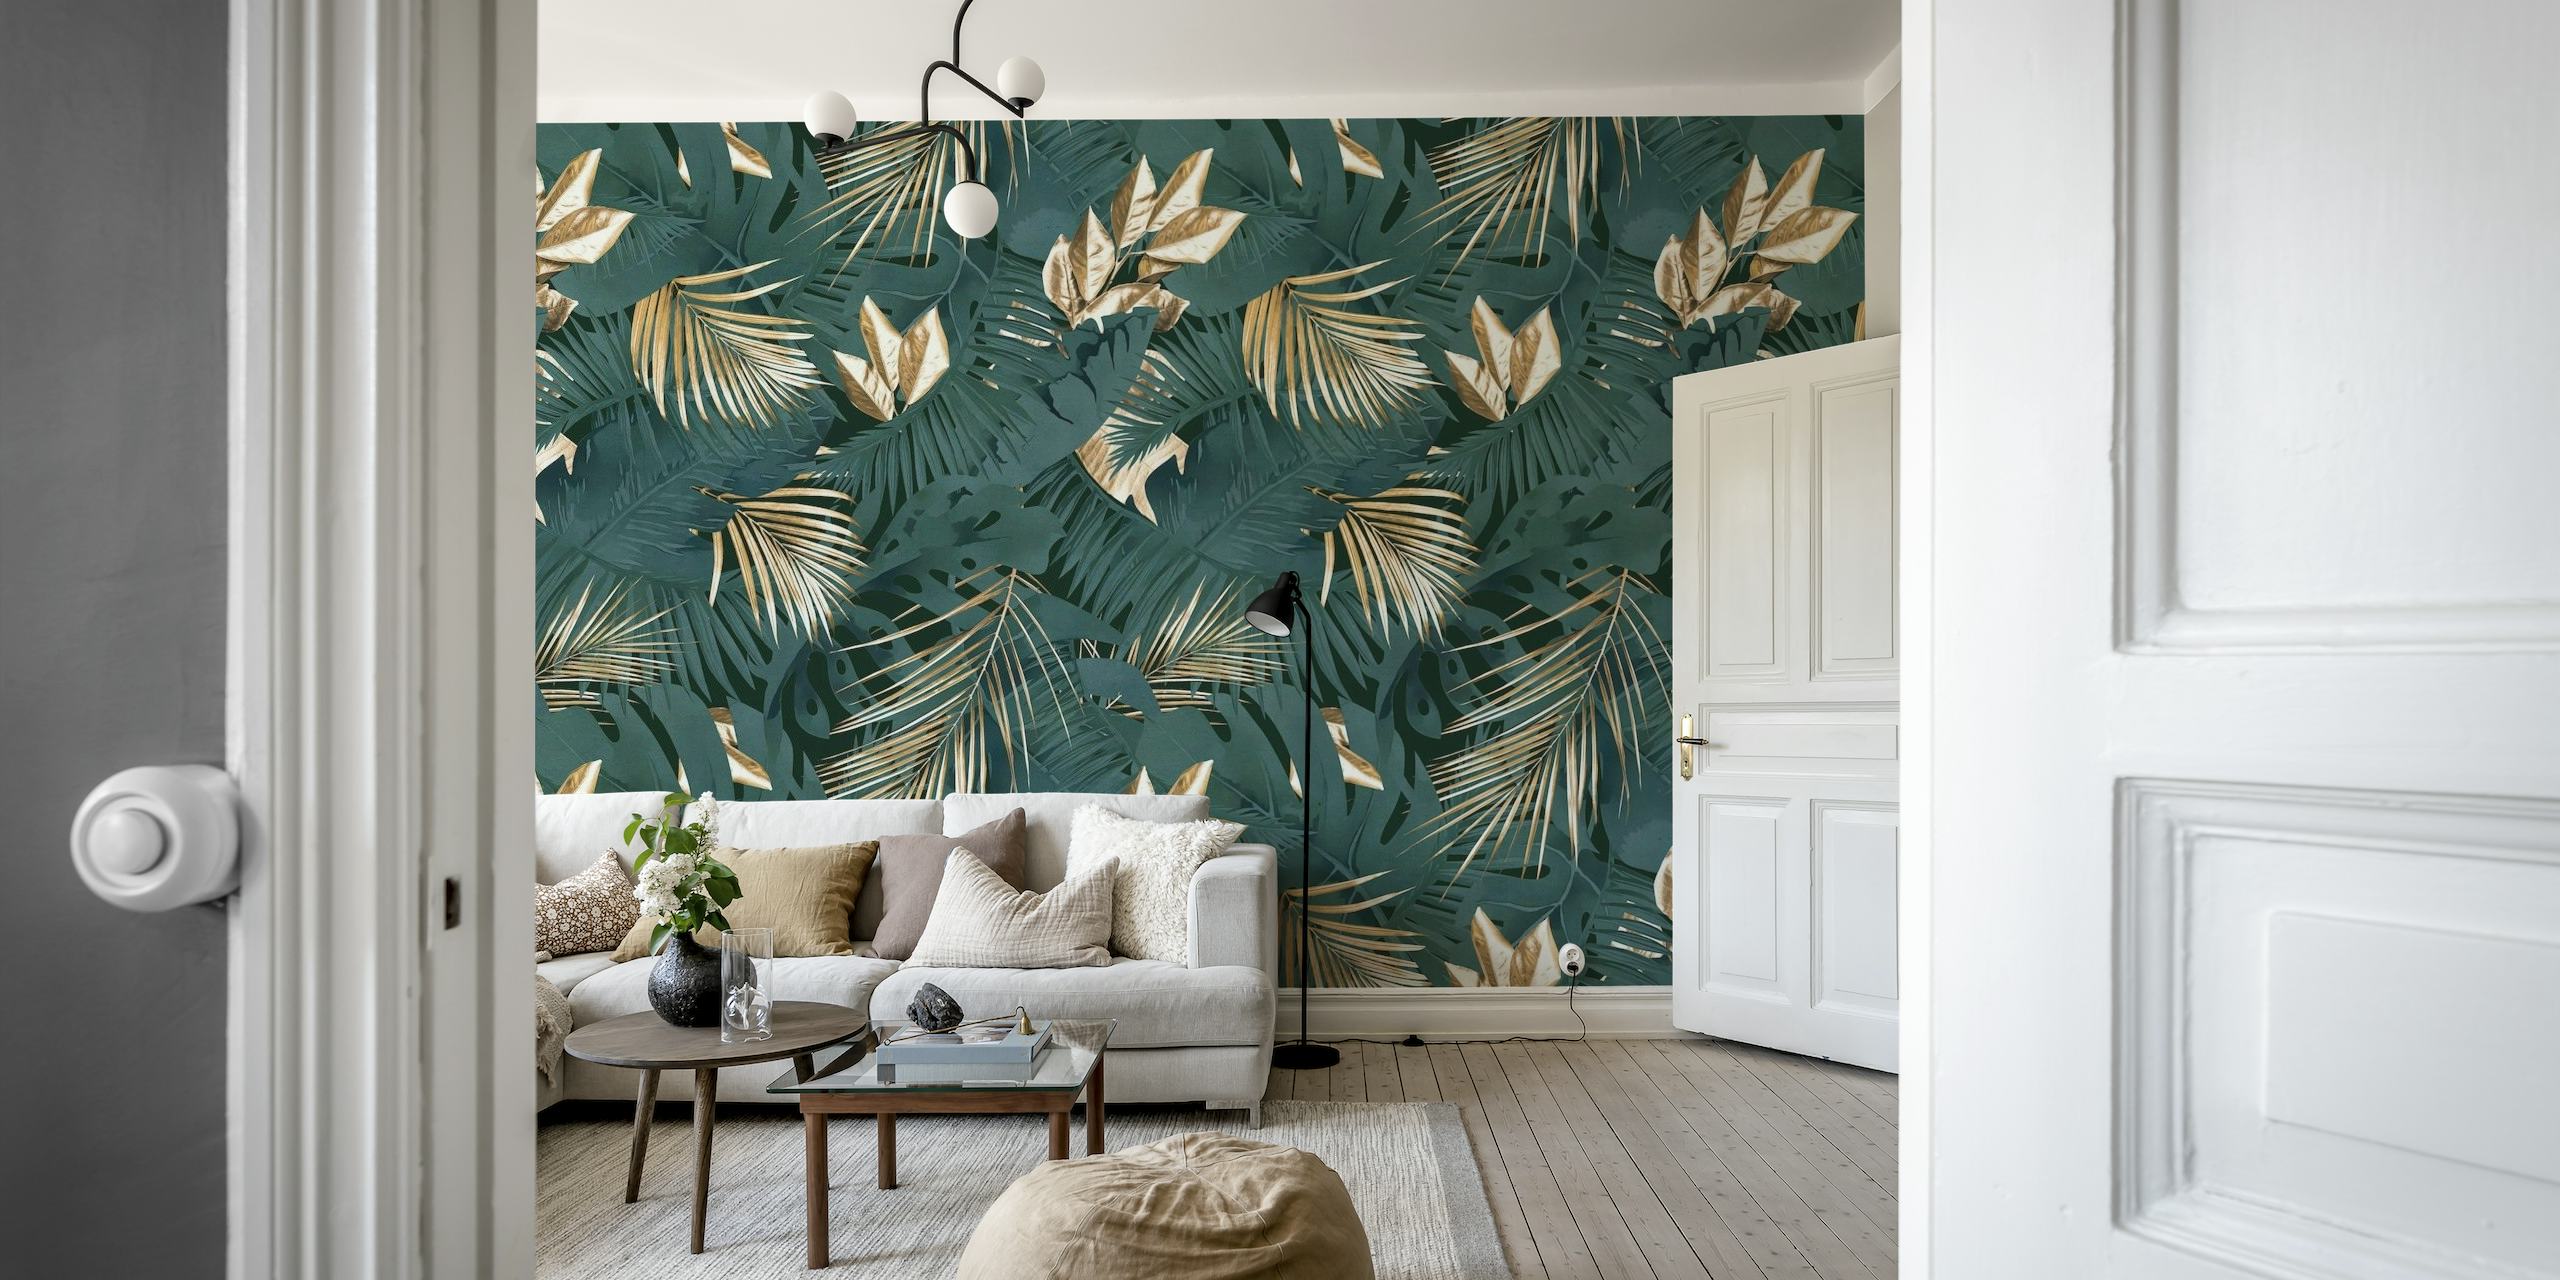 Zidna slika tamnih tonova s lišćem palme iz džungle u bogatom glamuroznom stilu